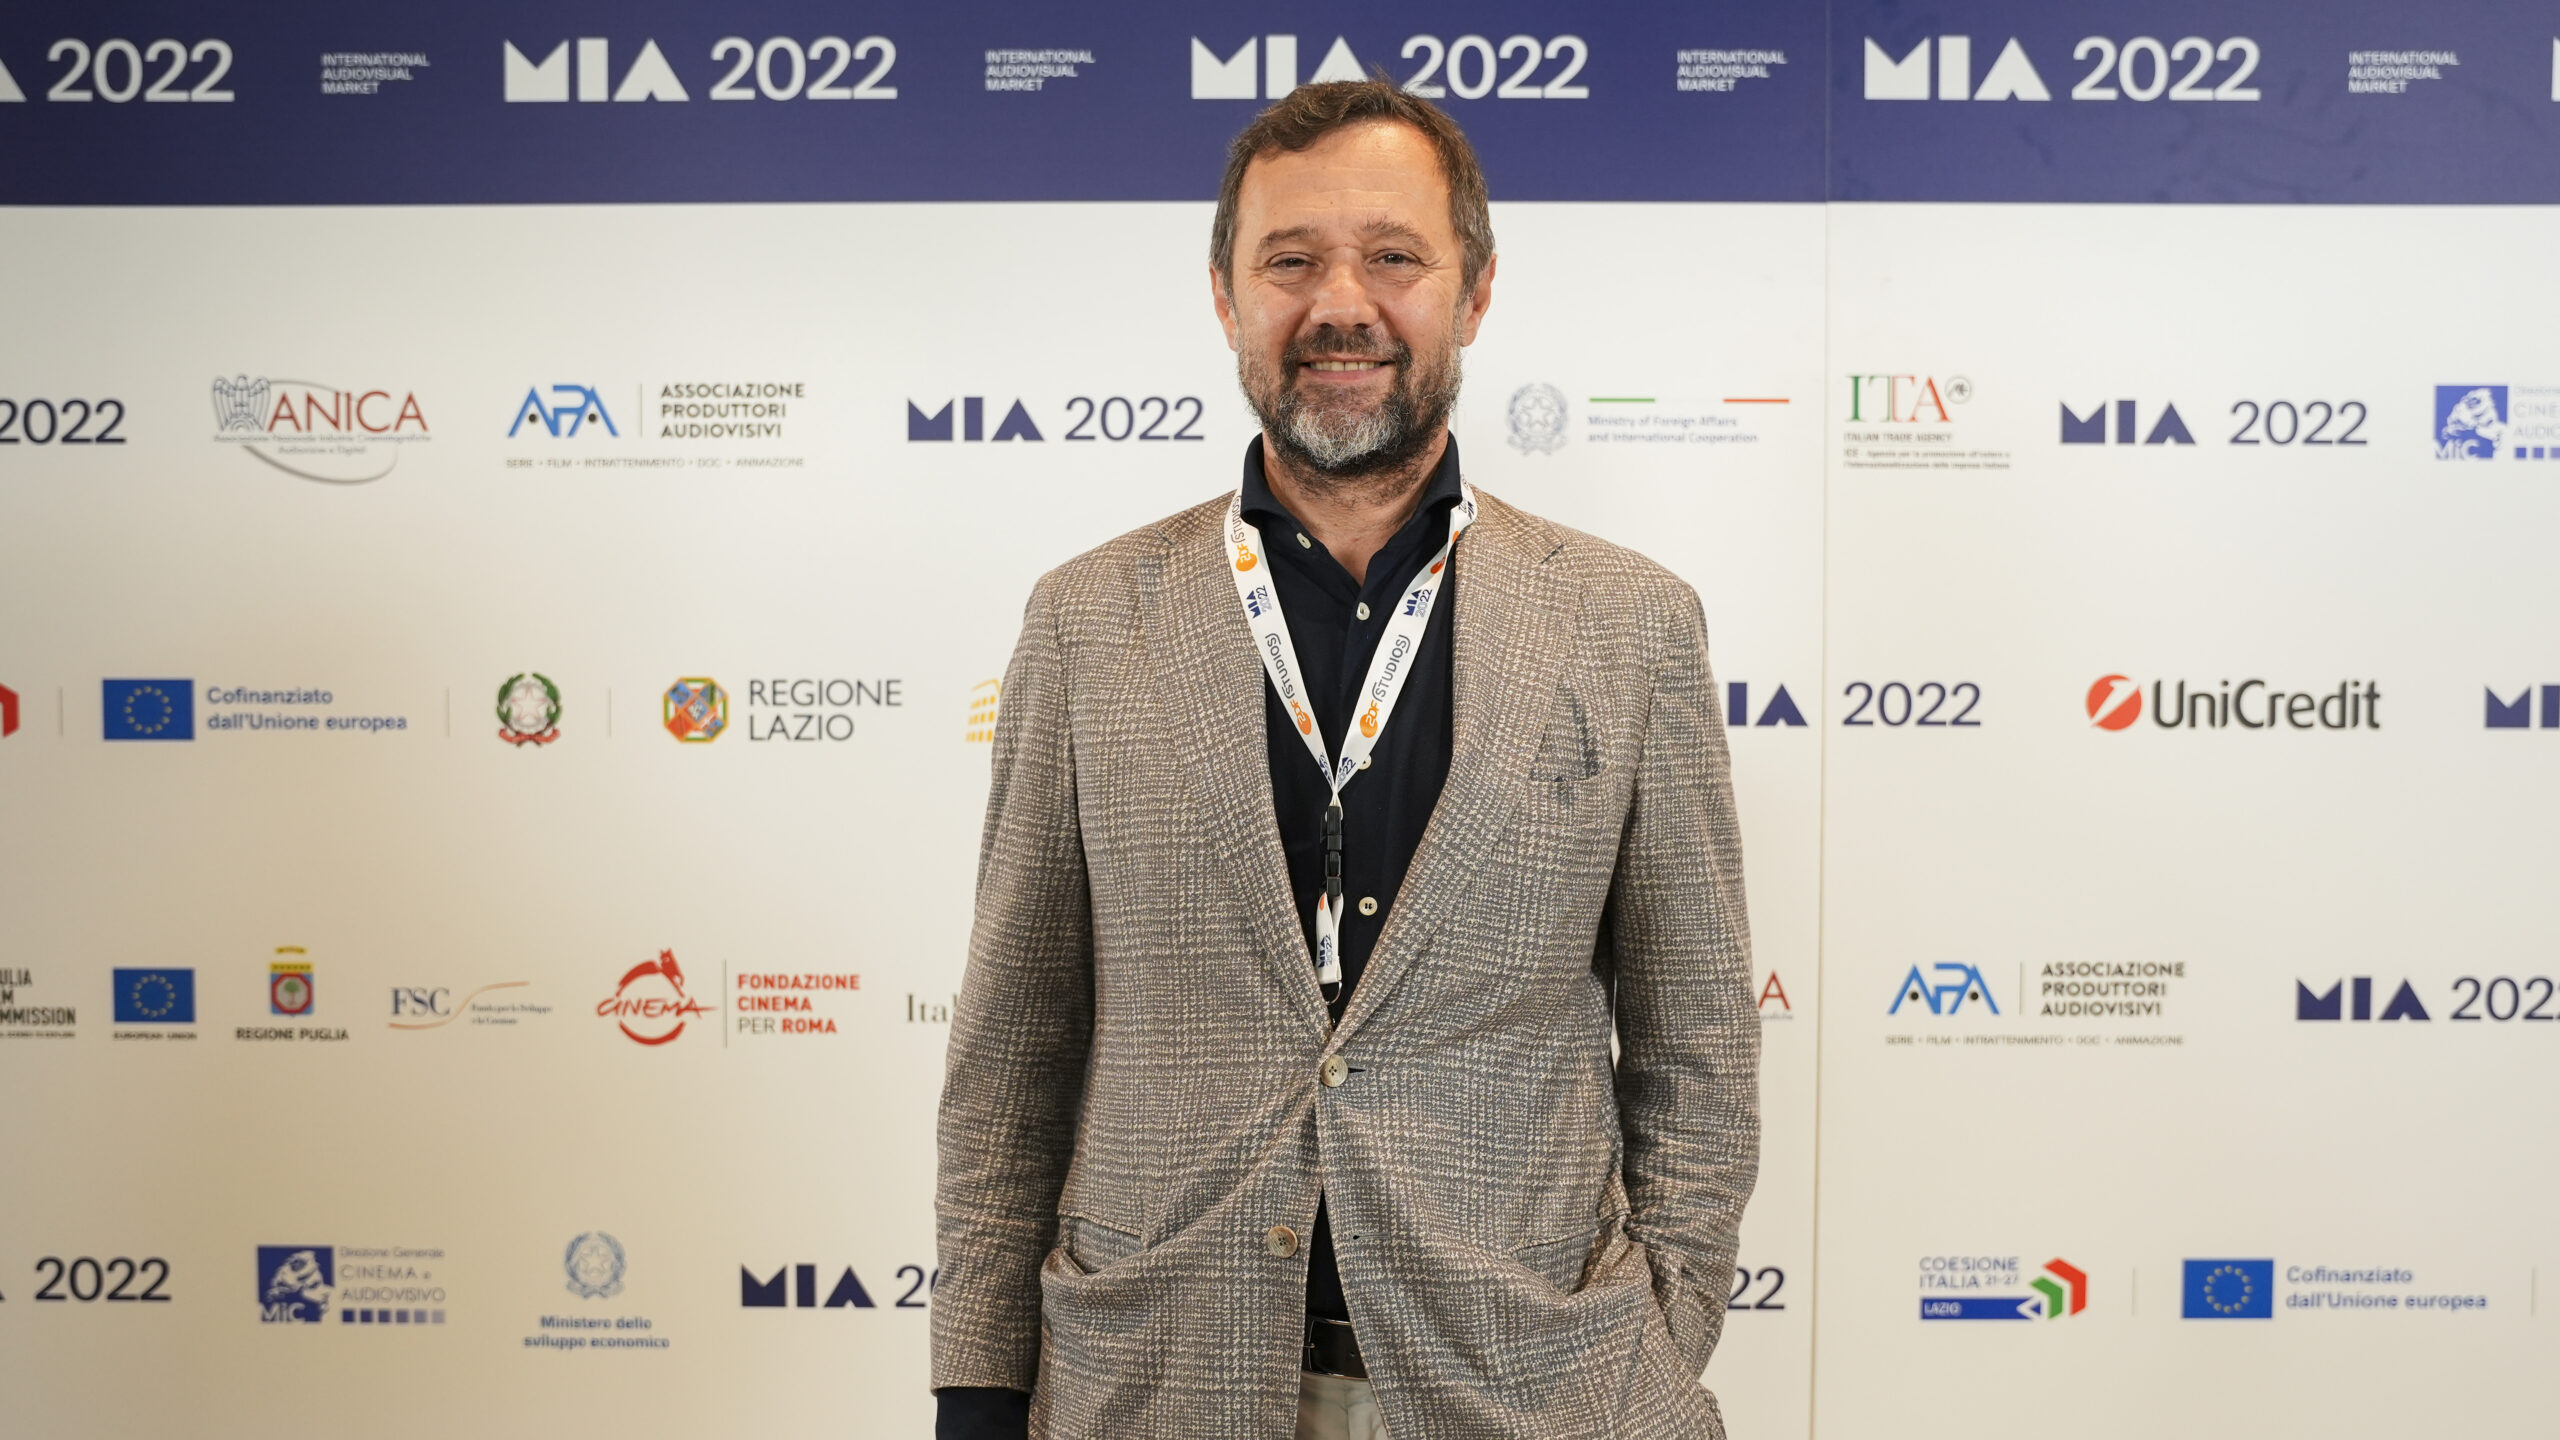 Massimiliano Orfei (CEO, Vision Distribution SpA)